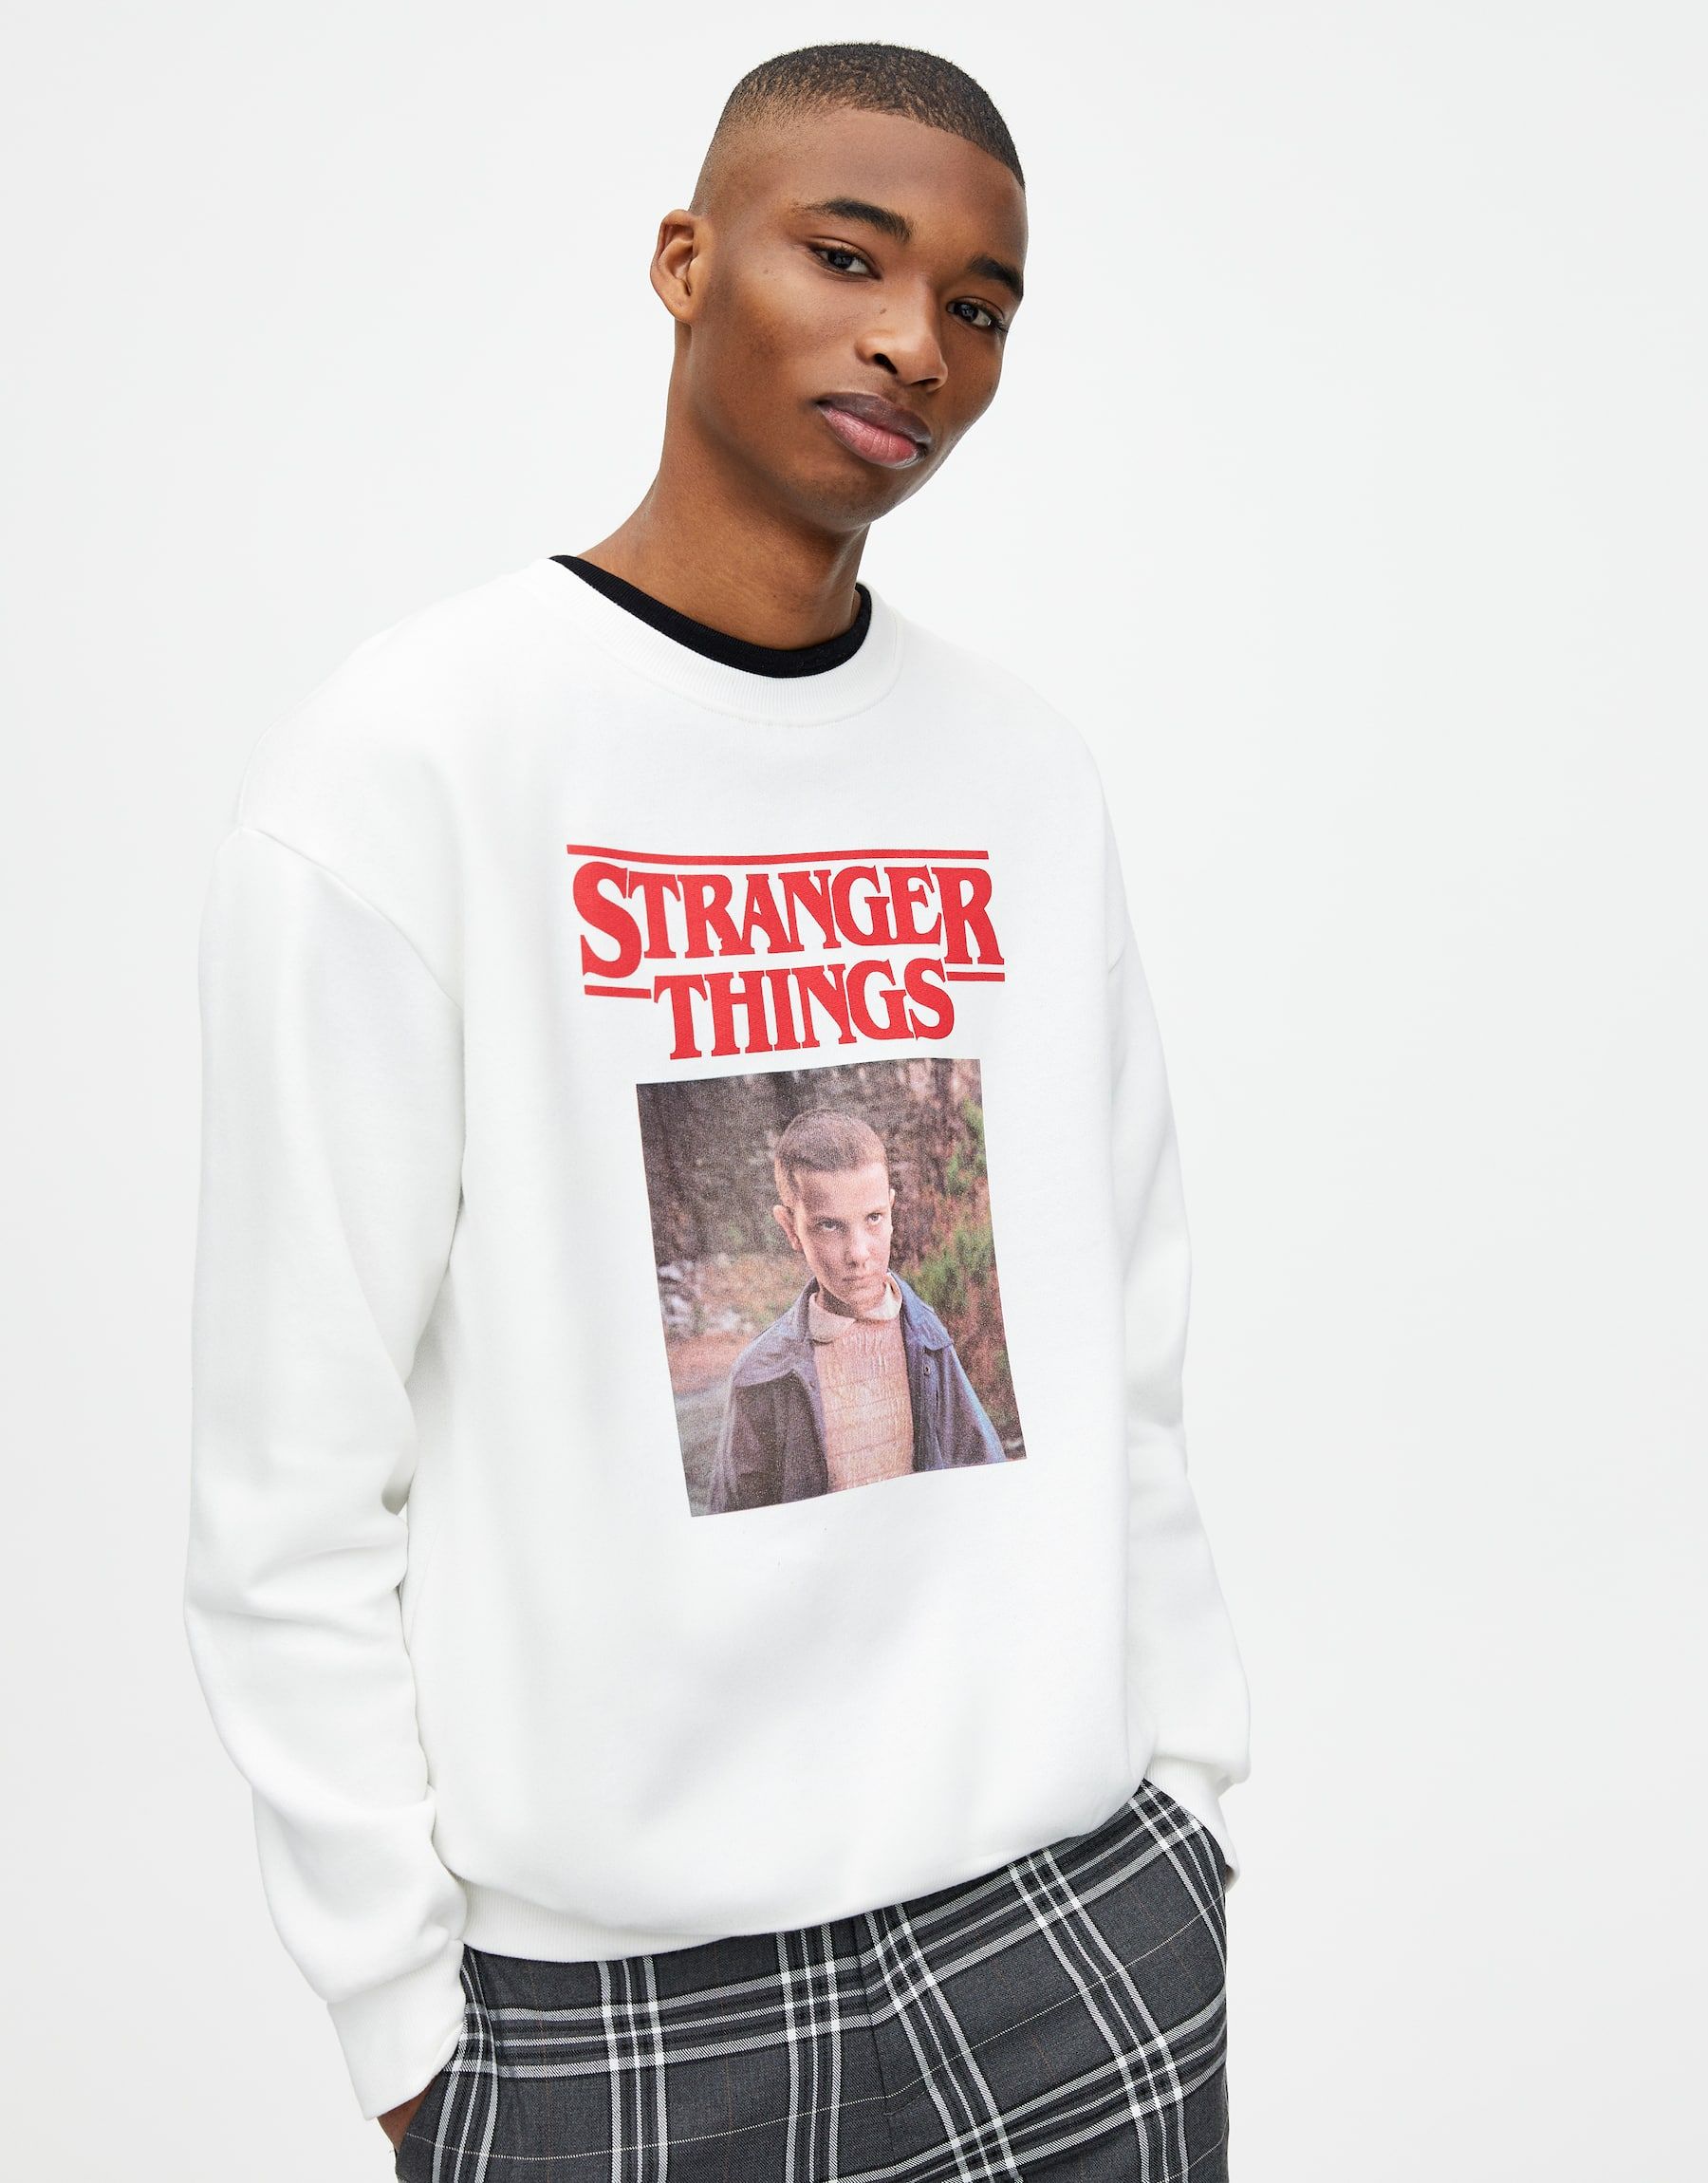 Pull & tiene rebajada la camiseta para meter presión a Netflix y que Stranger Things 3 se estrene ya